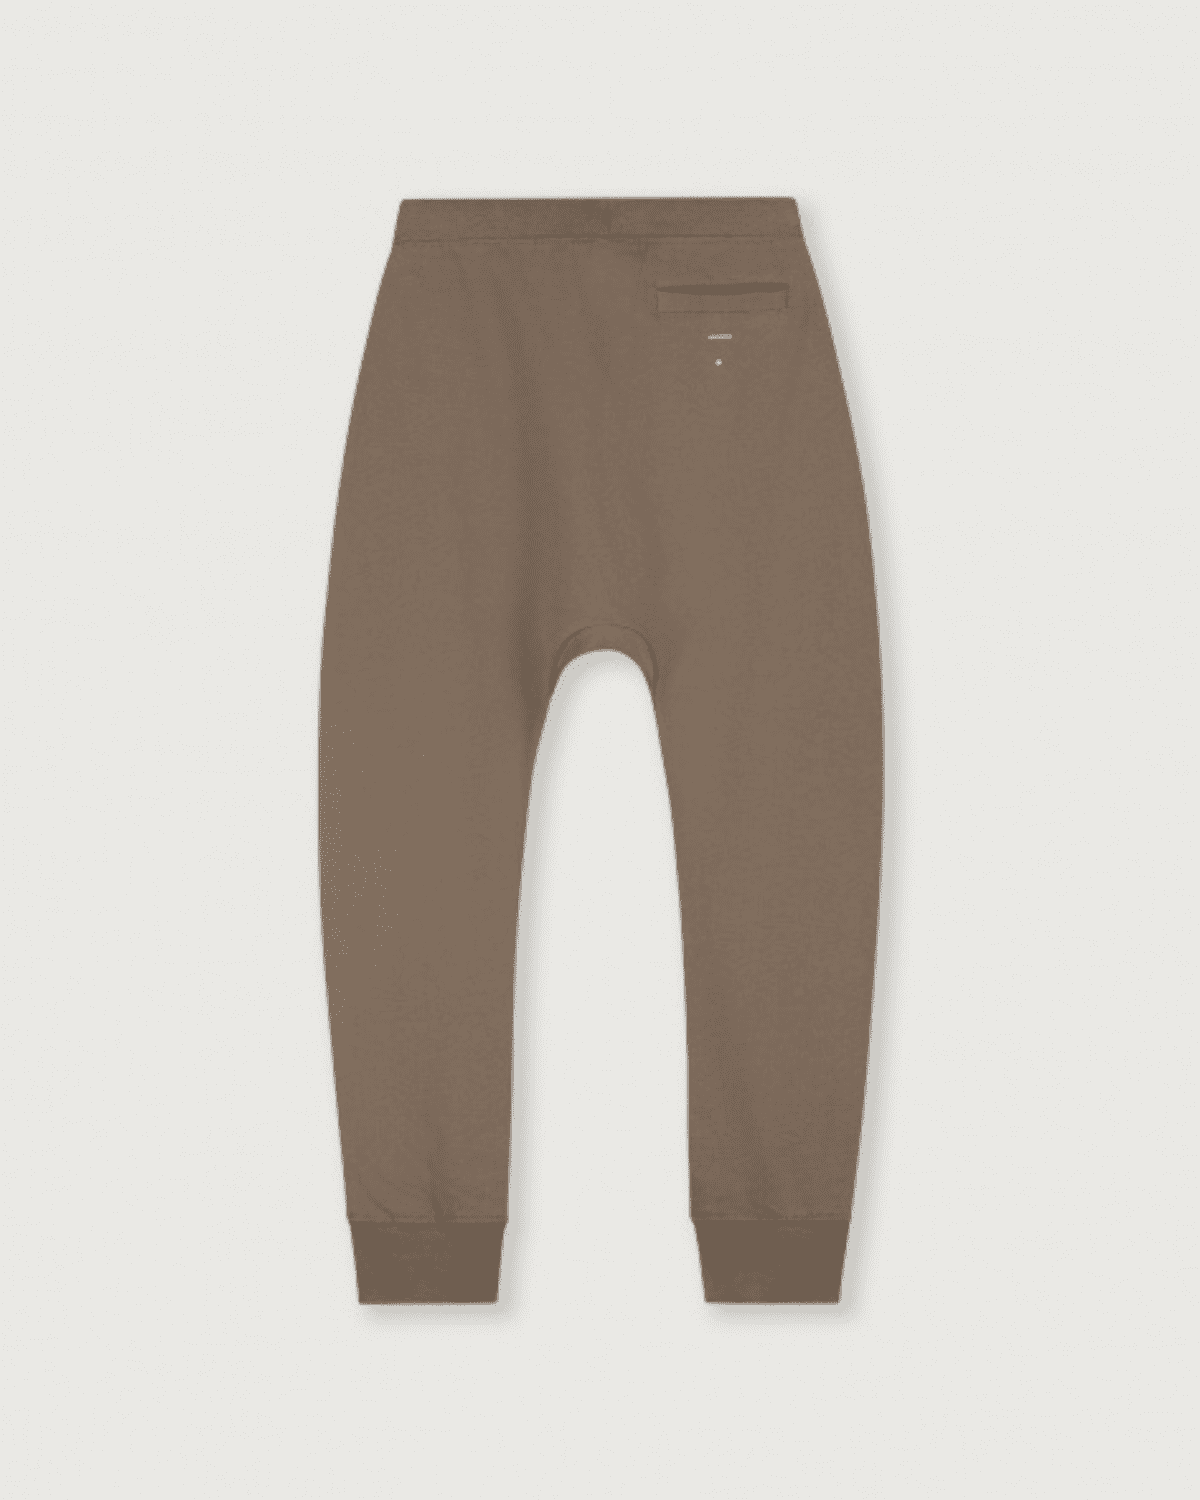 Baggy Pants Gray Label -   OAT & OCHRE